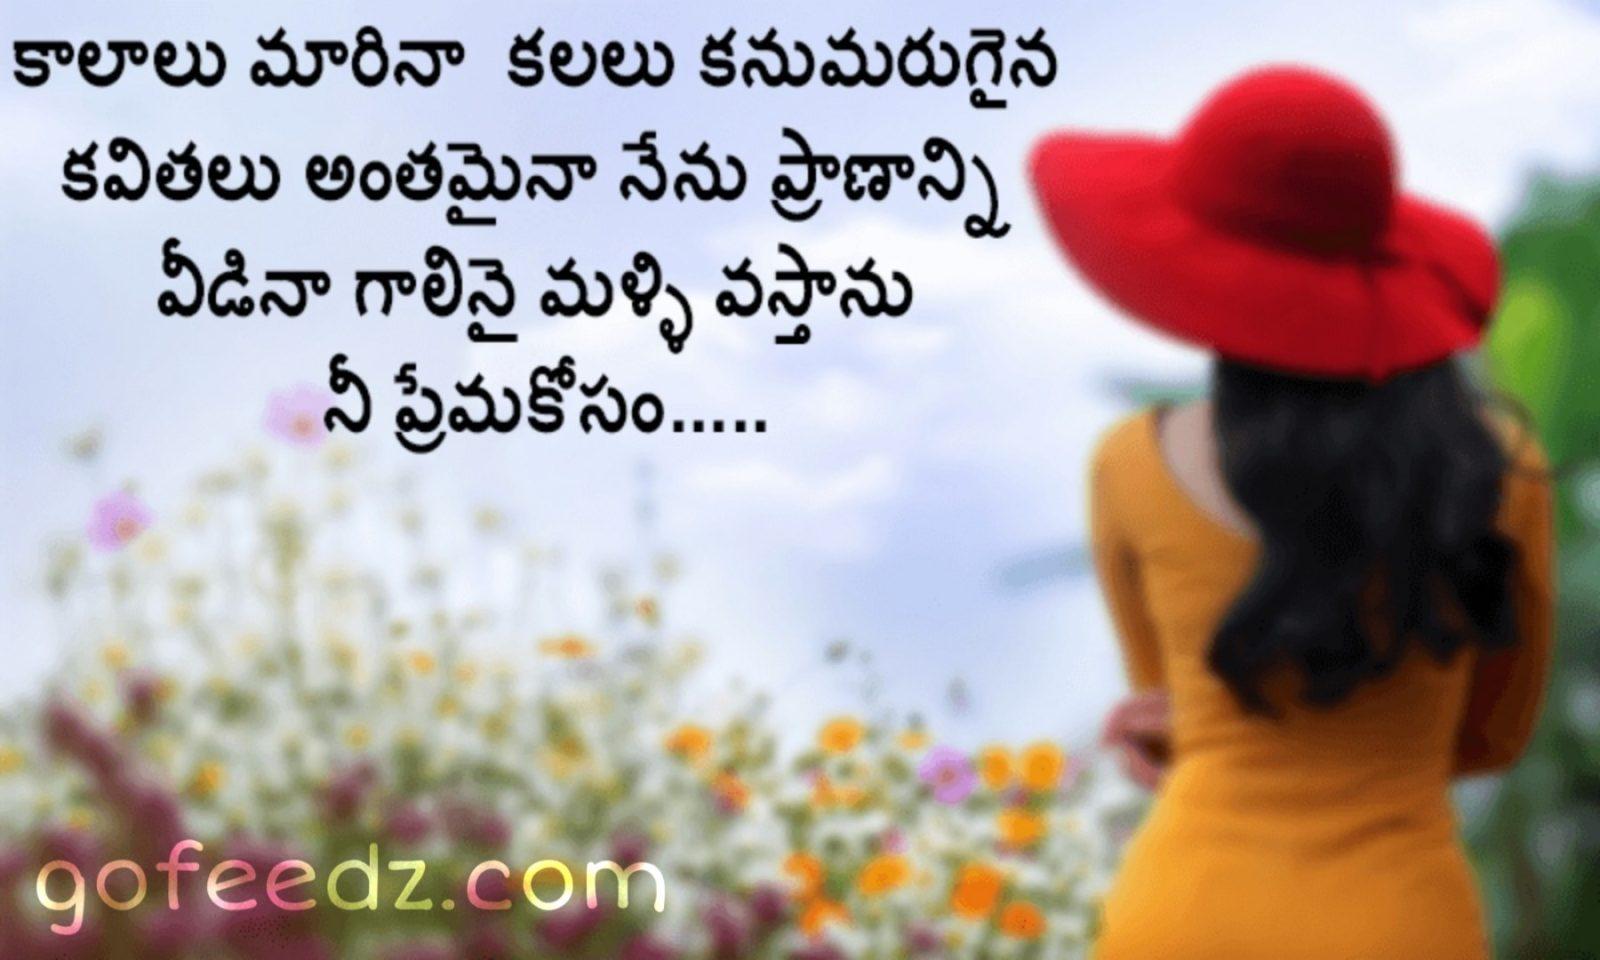 love quotes image Telugu. Telugu love quotes image